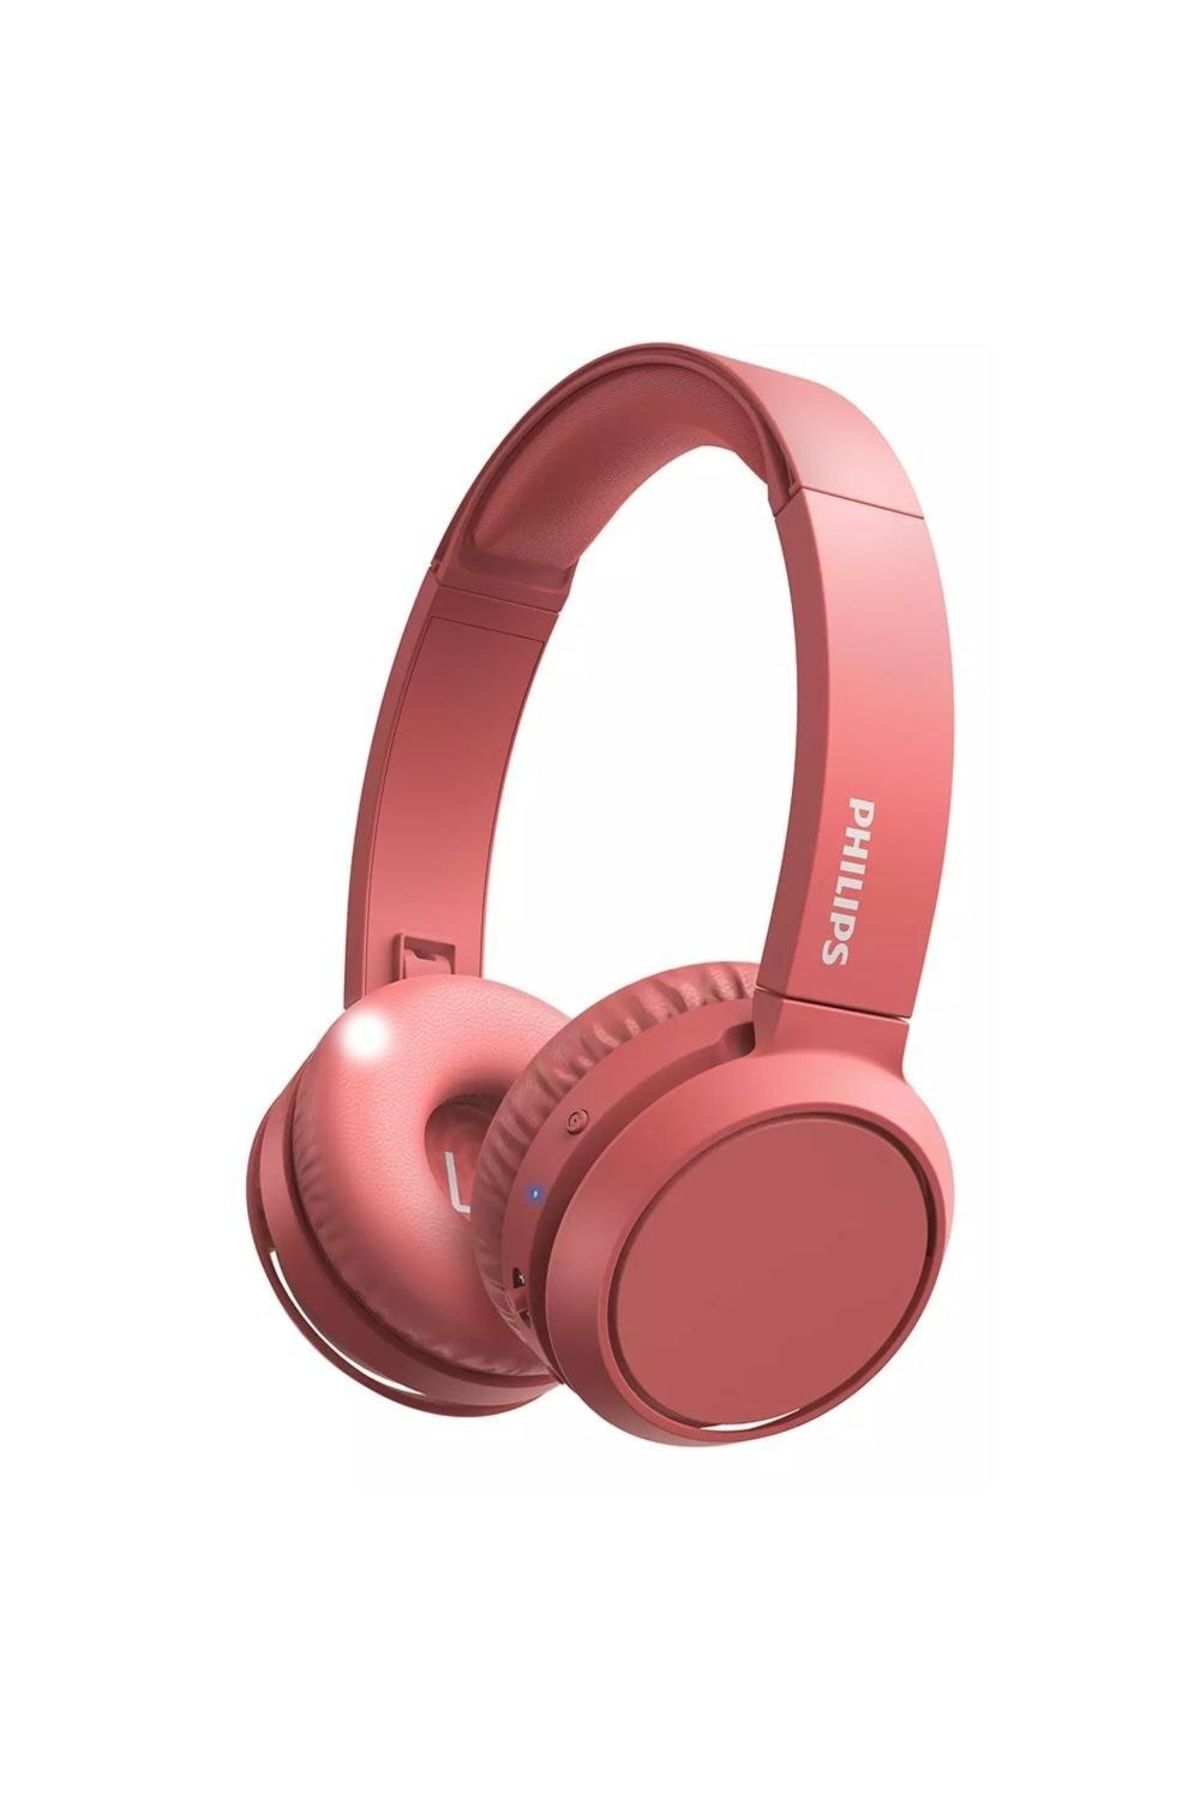 Philips Tah4205 Mikrofonlu Bluetooth Kulak Üstü Kulaklık   Kırmızı